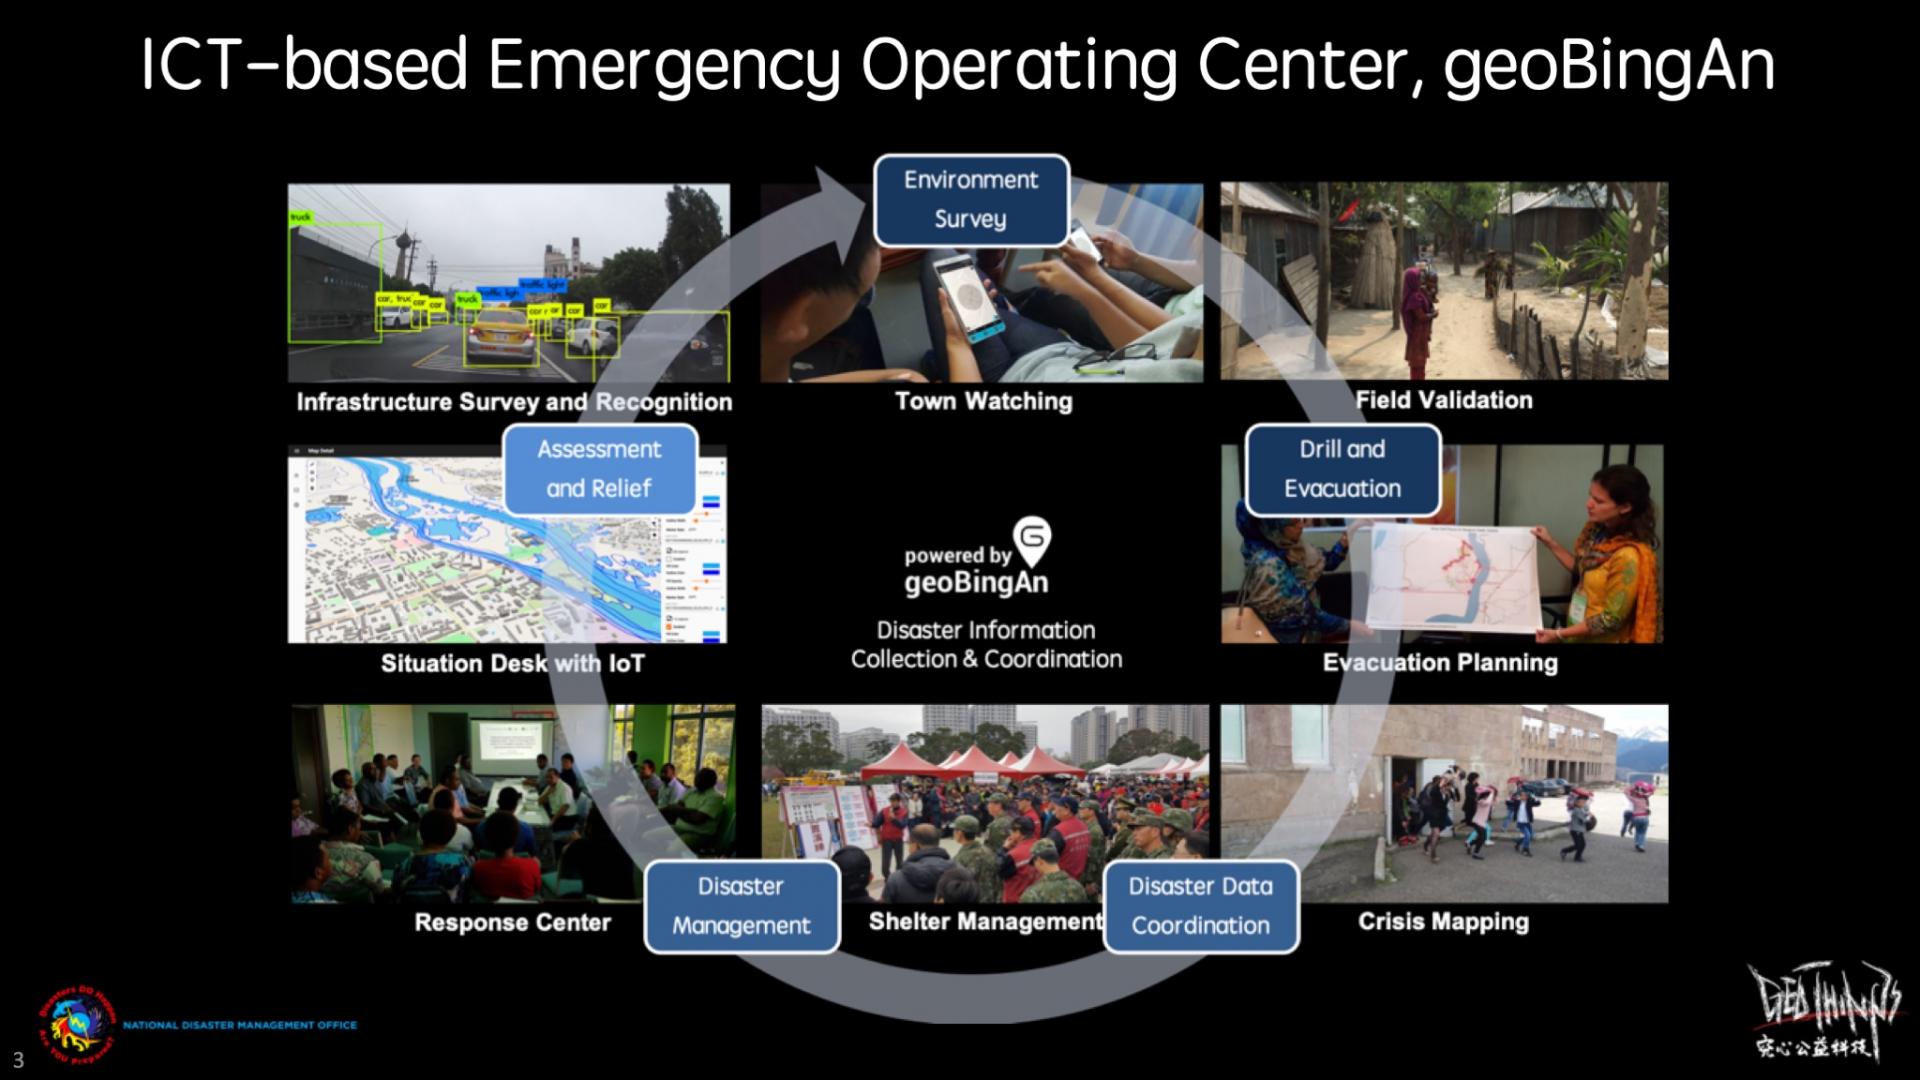 La TIC de uso humanitario, geoBingAn, como servicio integrado que funciona para respuestas antes, durante y después de una catástrofe